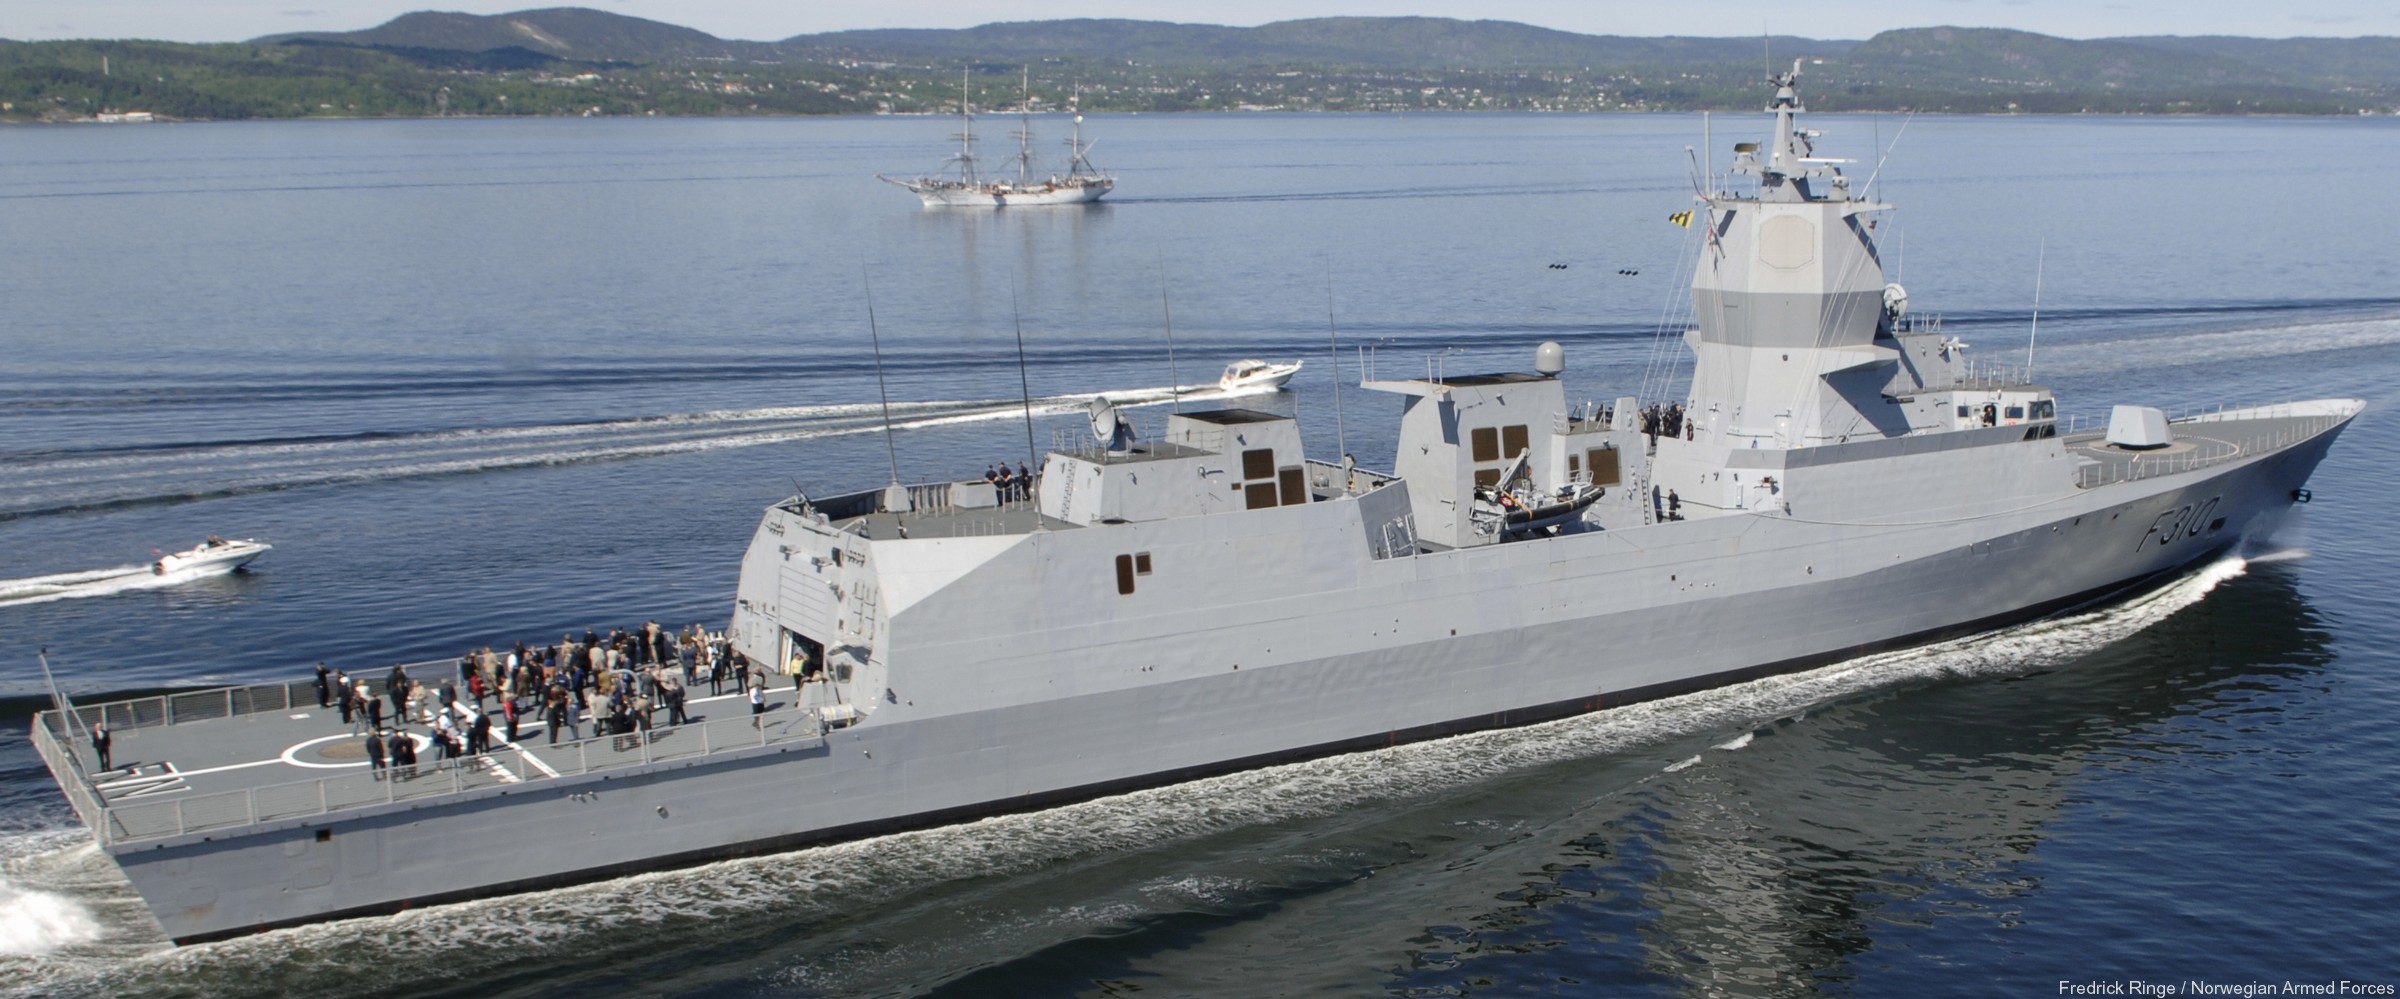 f-310 fridtjof nansen hnoms knm frigate royal norwegian navy sjoforsvaret 67